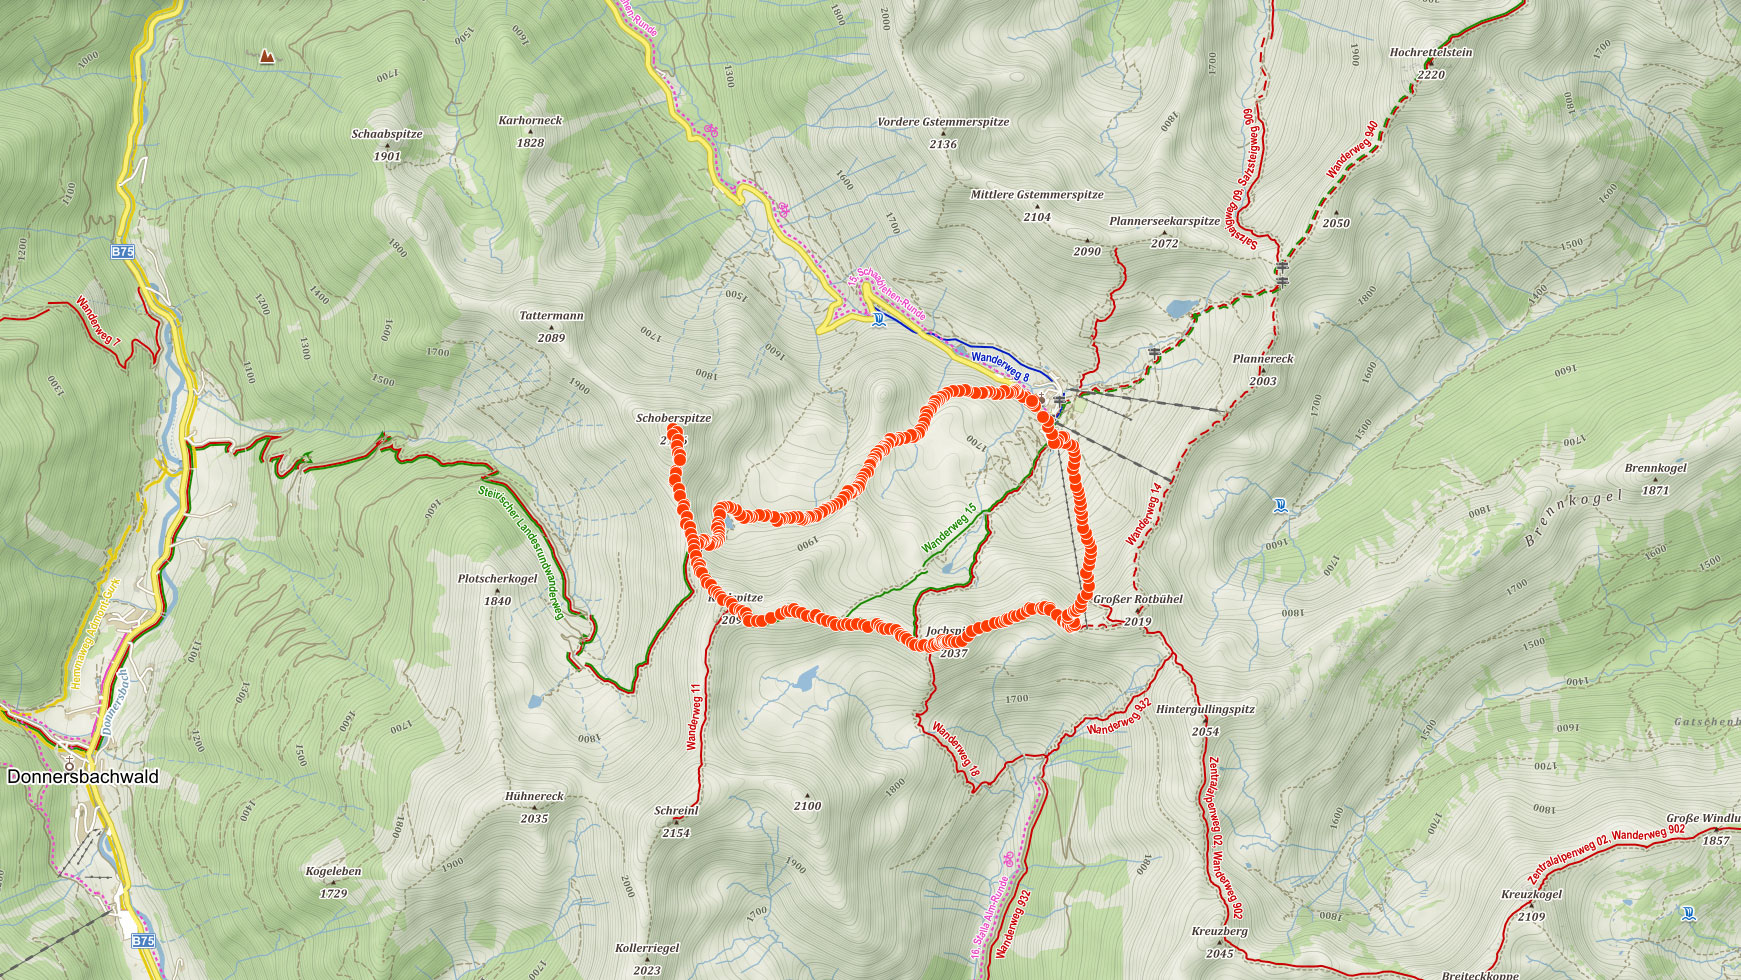 Mapa výletu na Schoberspitze v rakouských Alpách